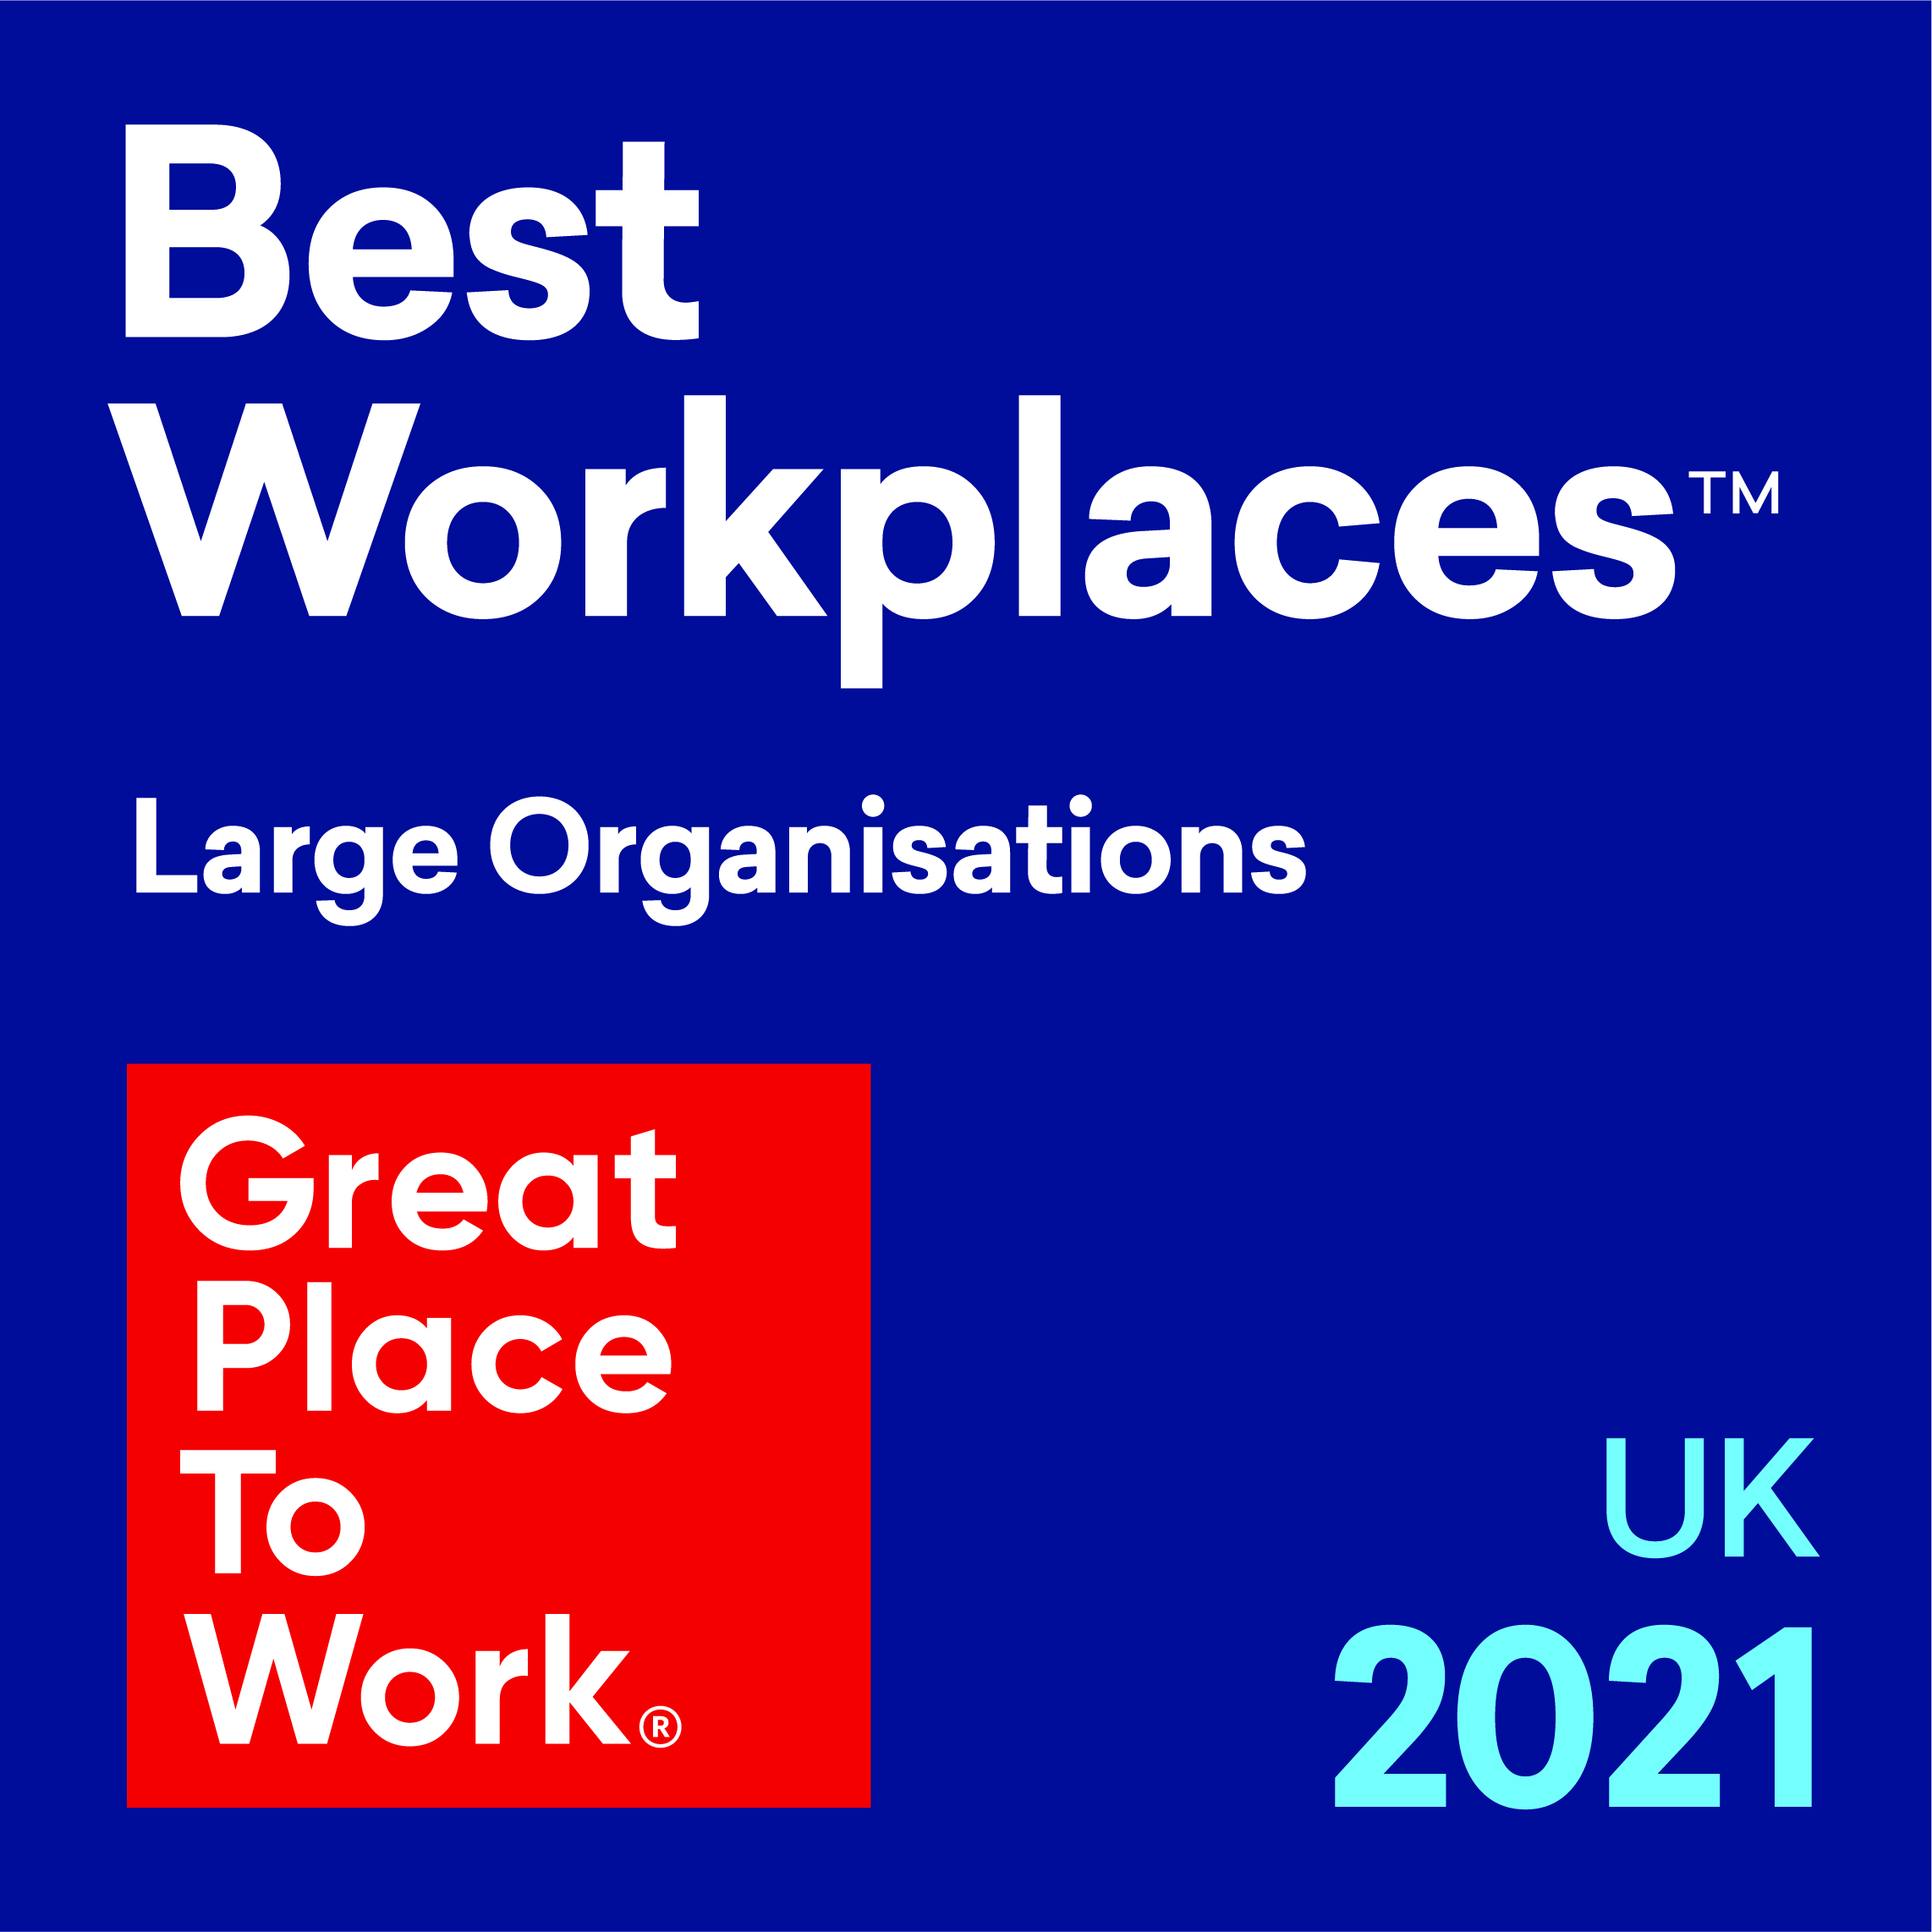 Best Workplaces UK CMYK 2021-LARGE